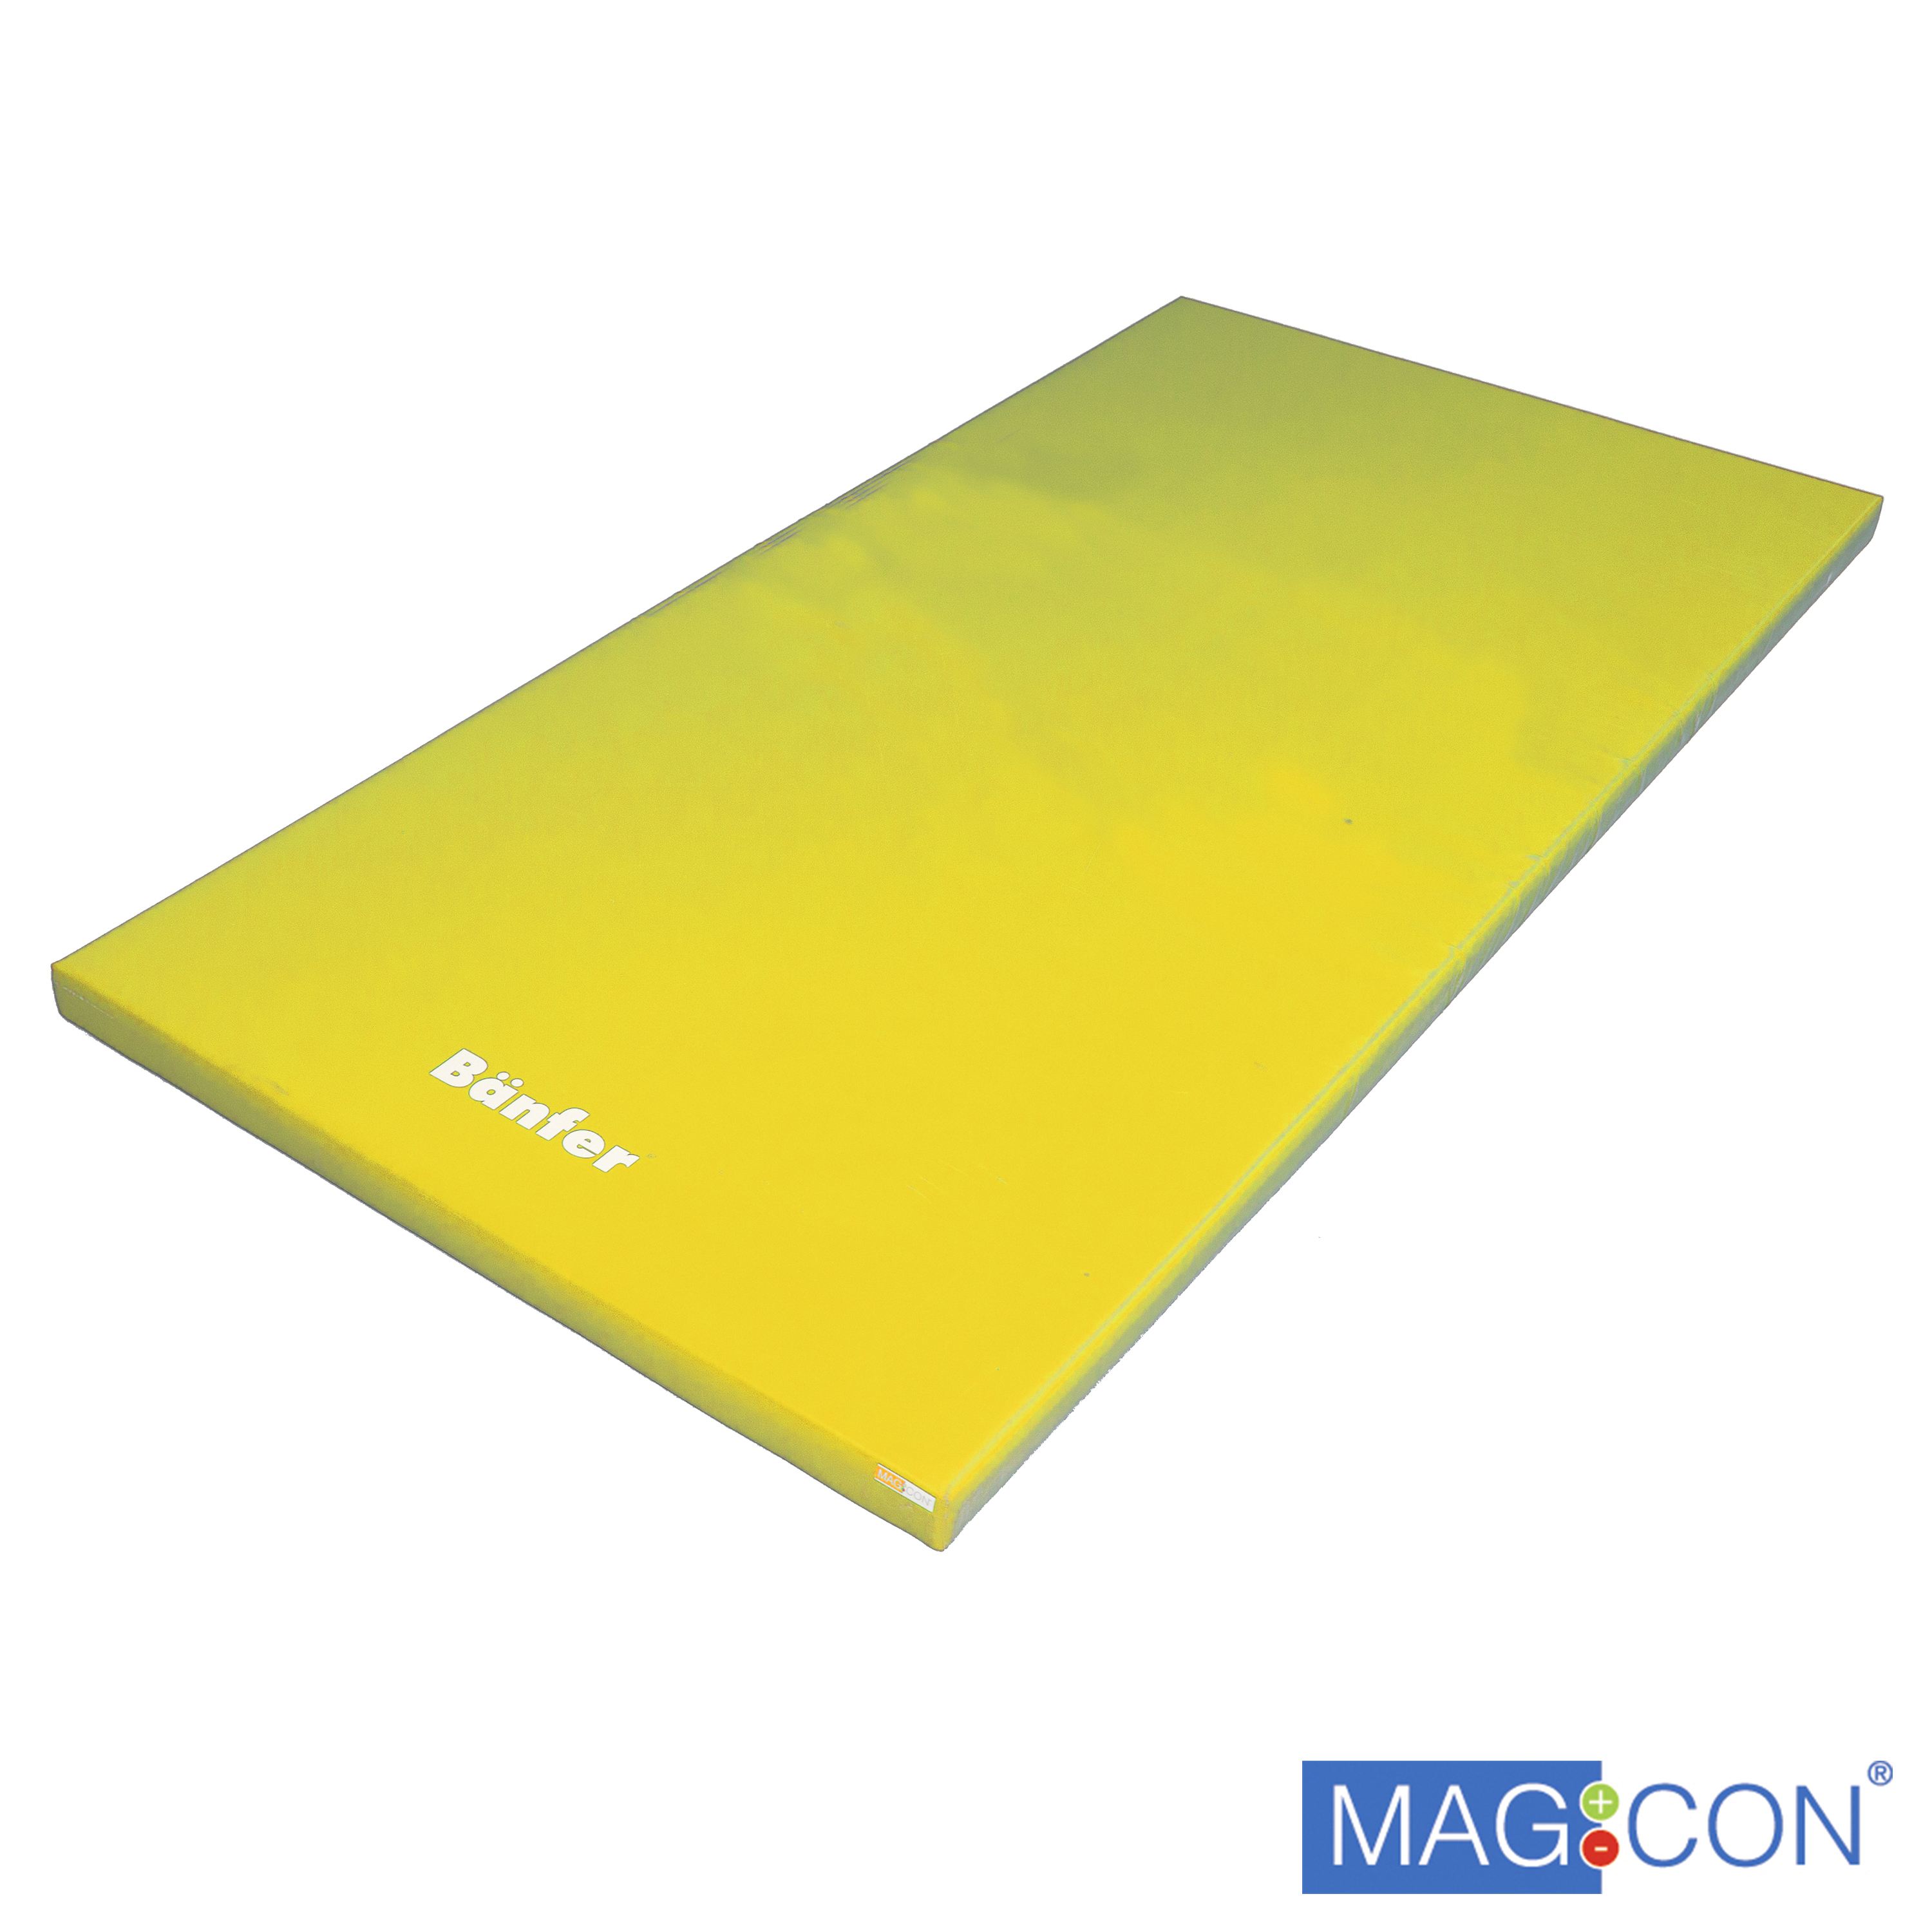 Super-Leichtturnmatte Magnetecken 150 x 100 x 8 cm, gelb